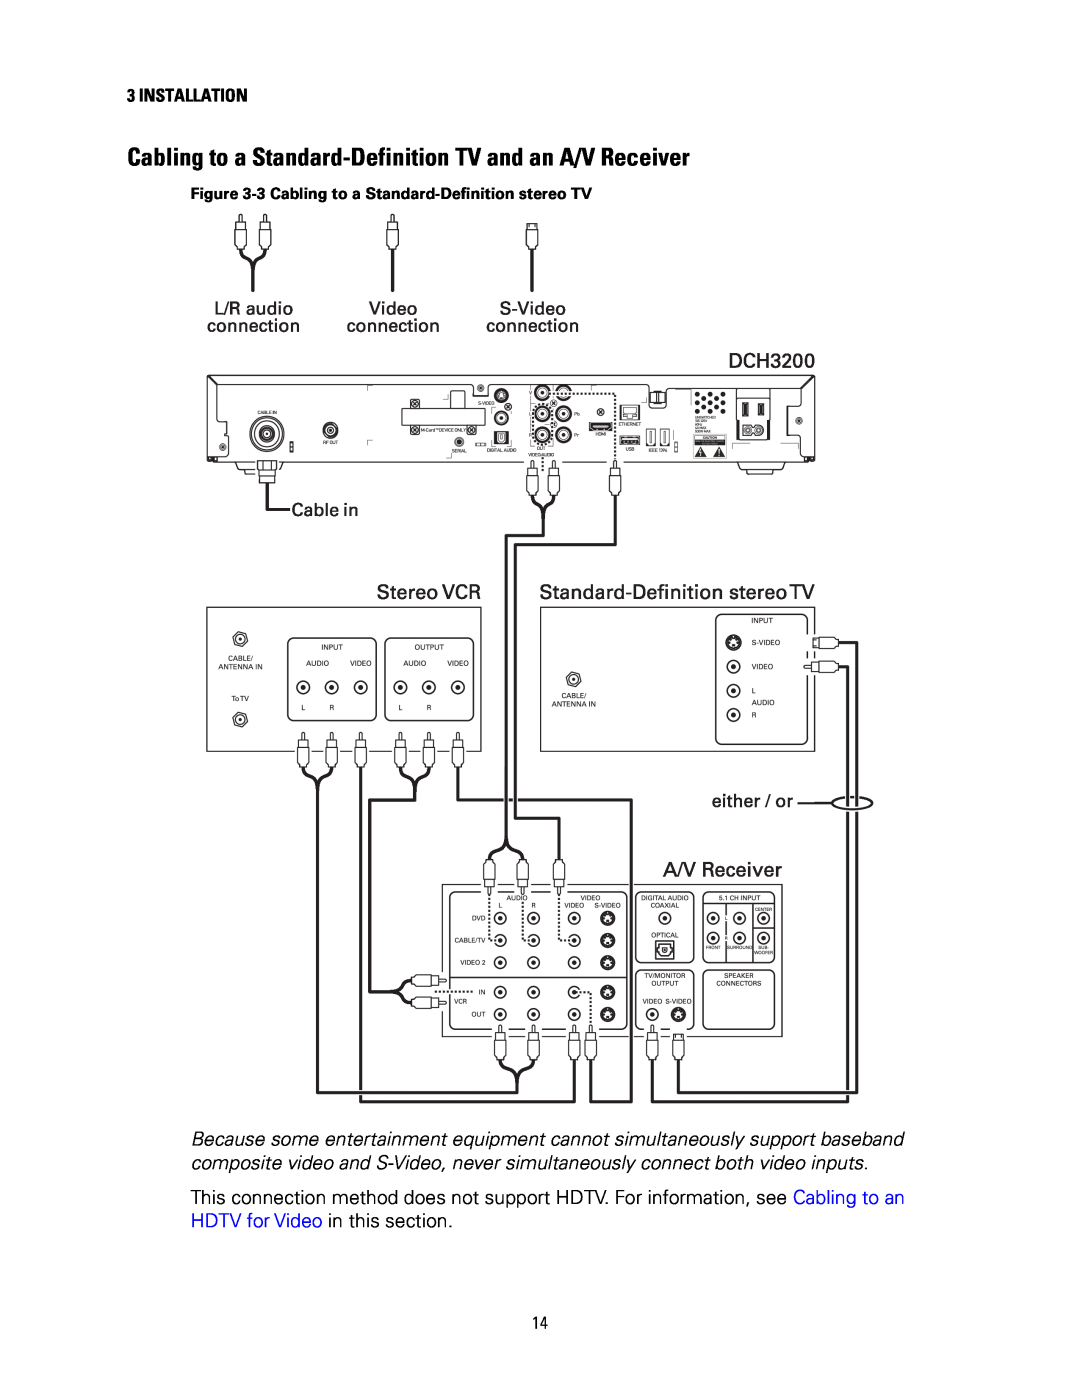 Motorola DCH3200 installation manual Installation 